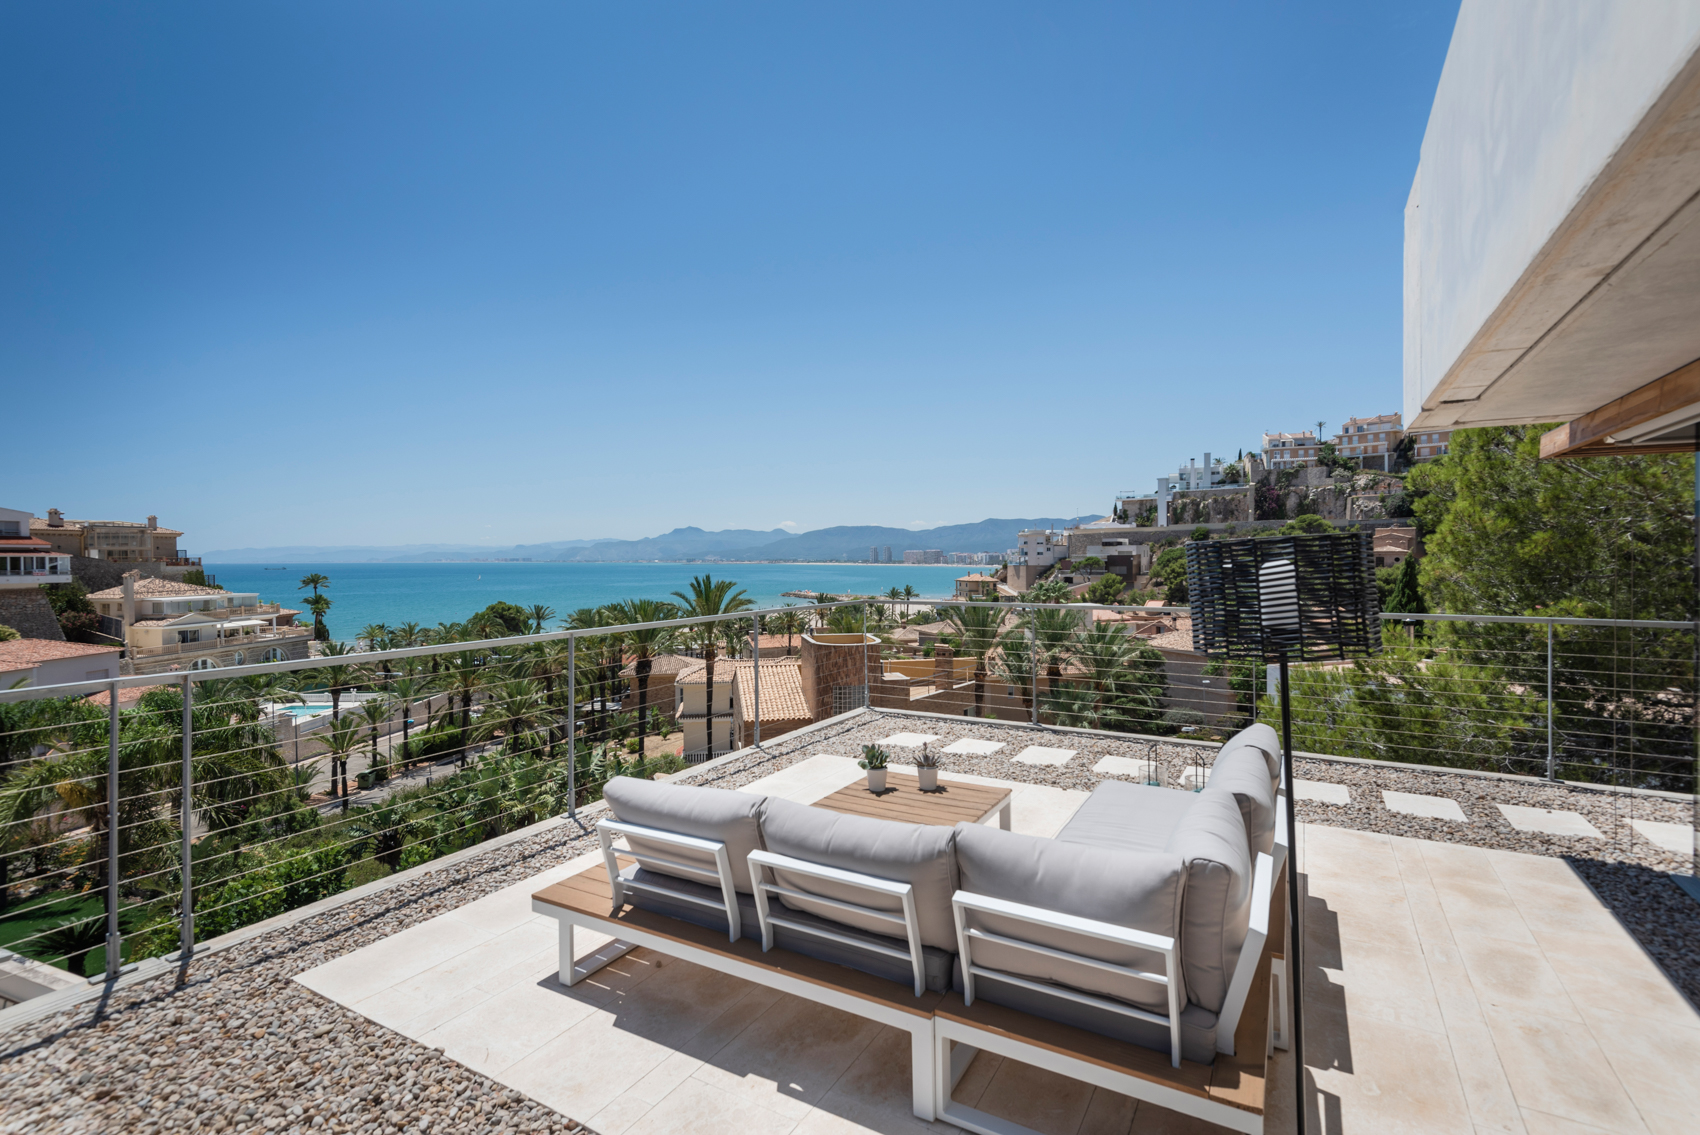 Villa in Spain with sea views